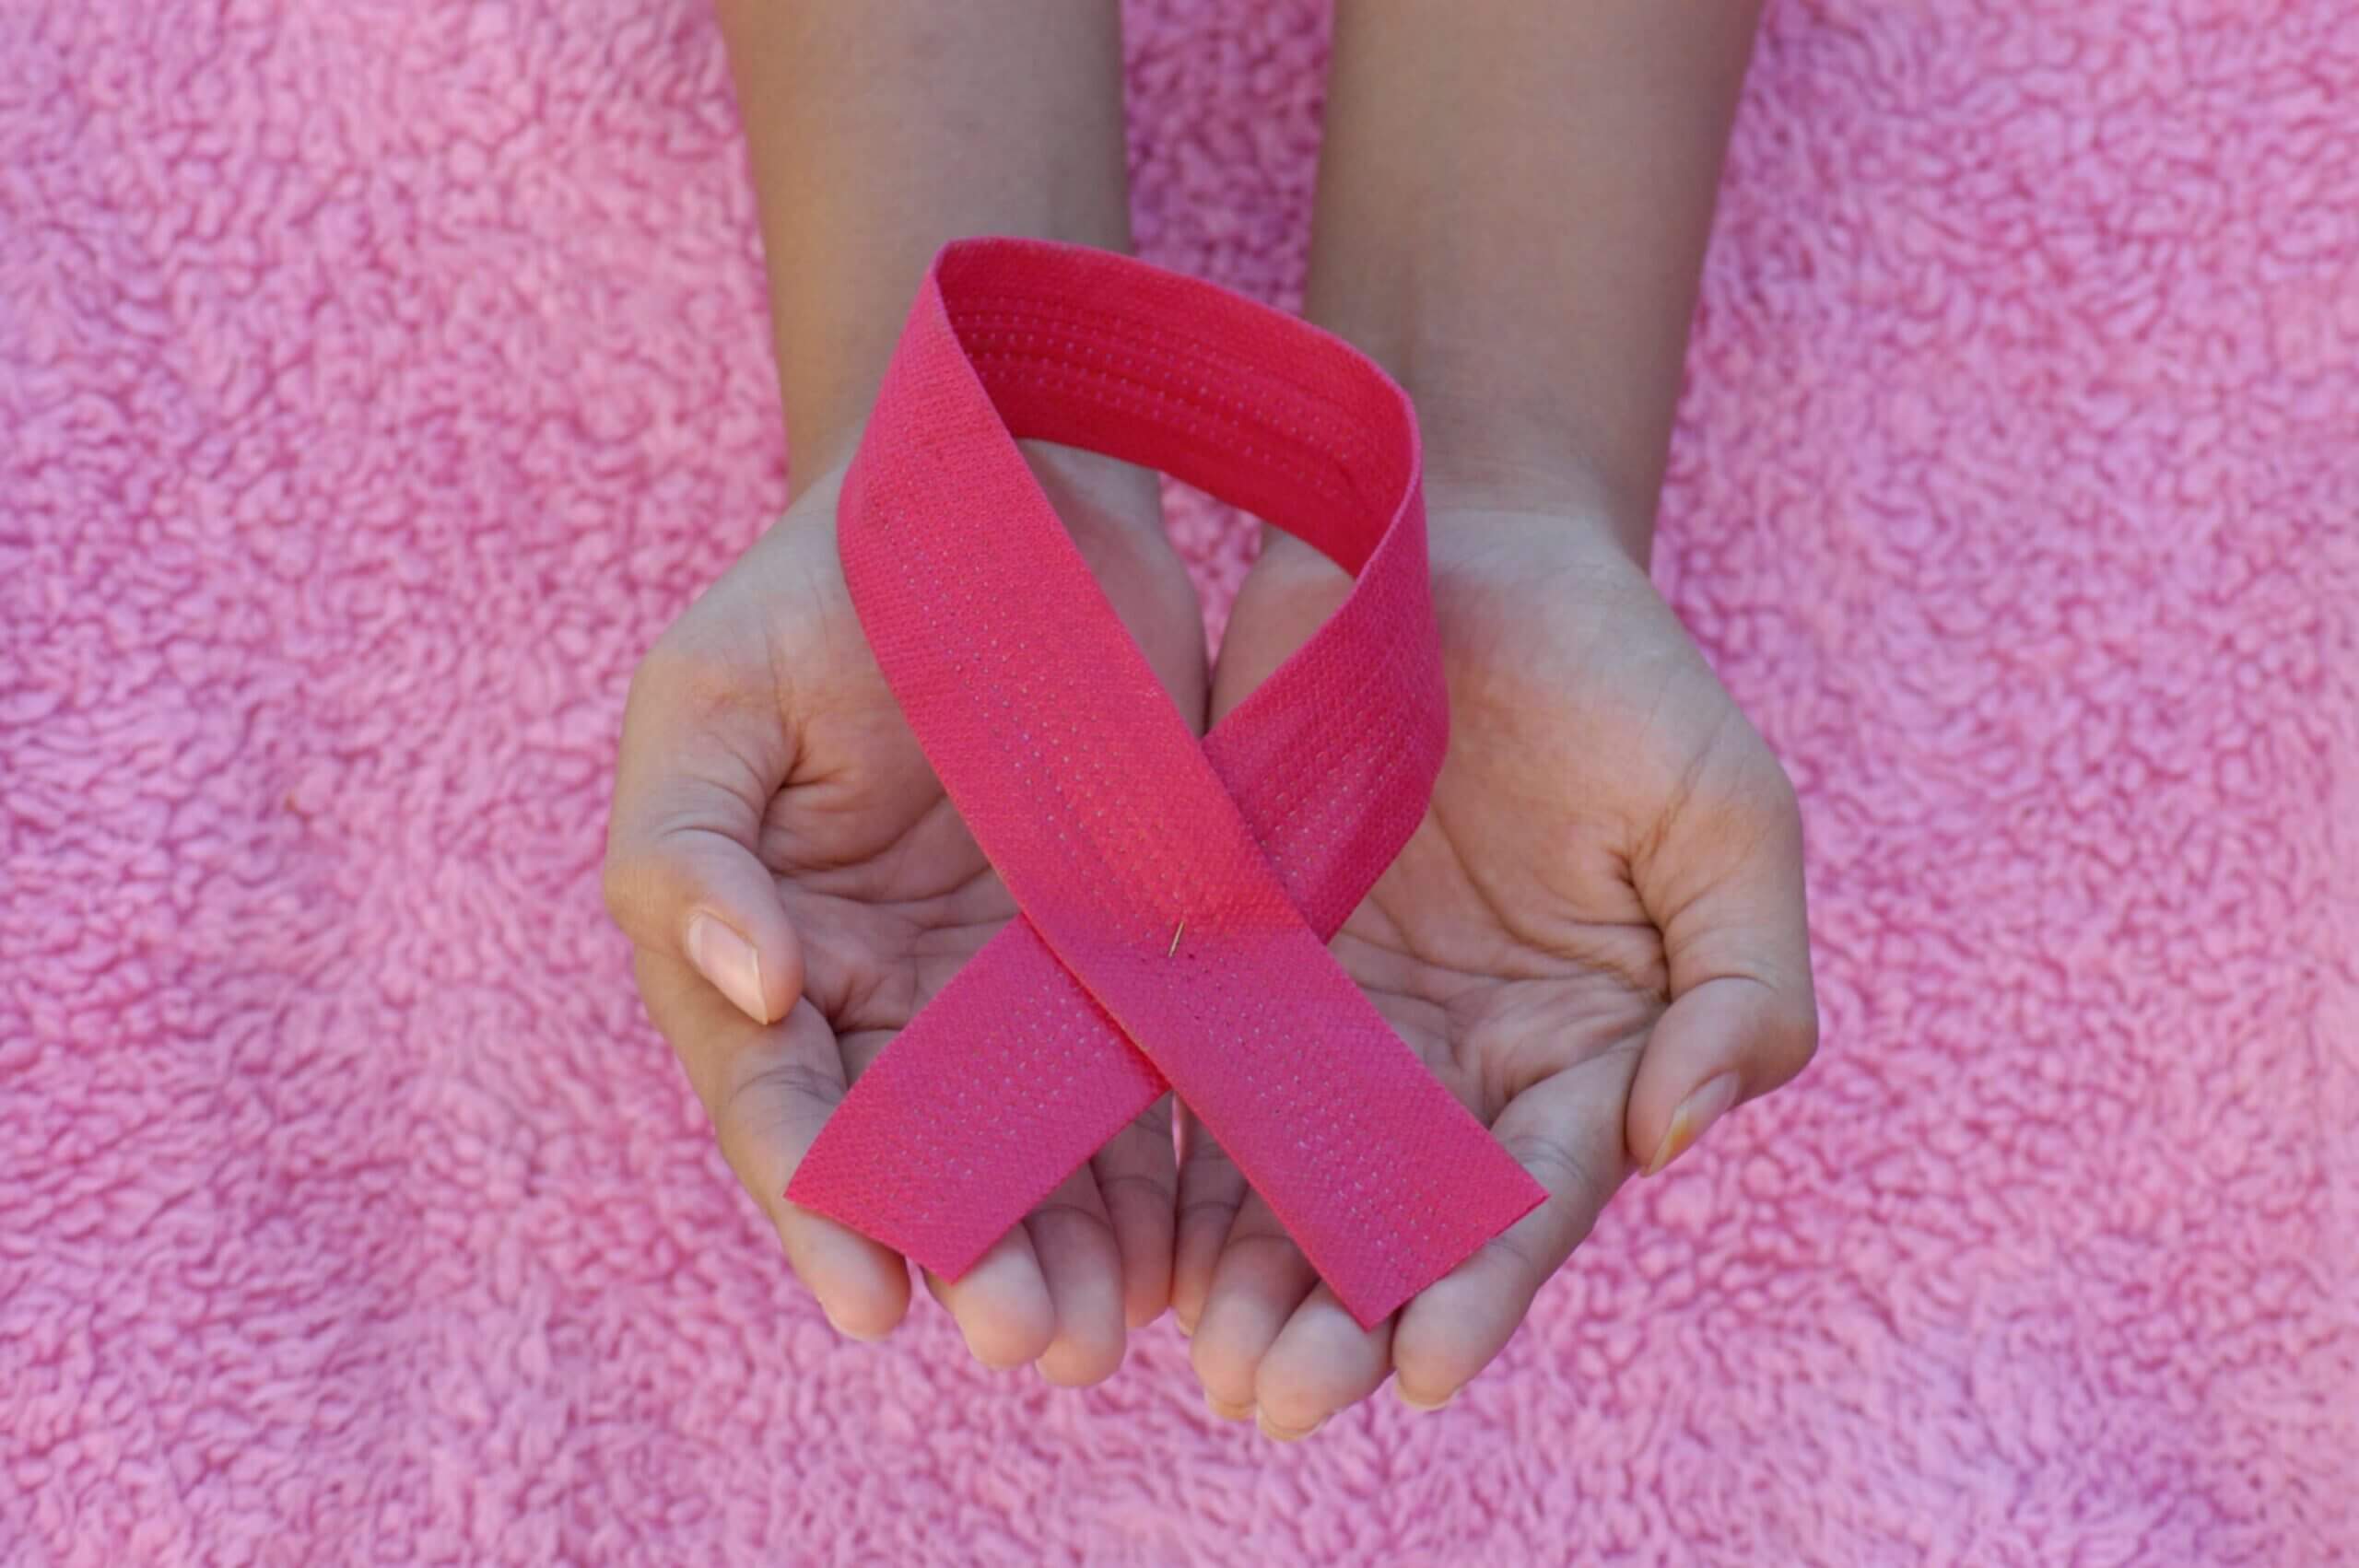 طفرة في علاج سرطان الثدي من خلال اكتشاف دواء جديد يقلّل خطر عودة المرض